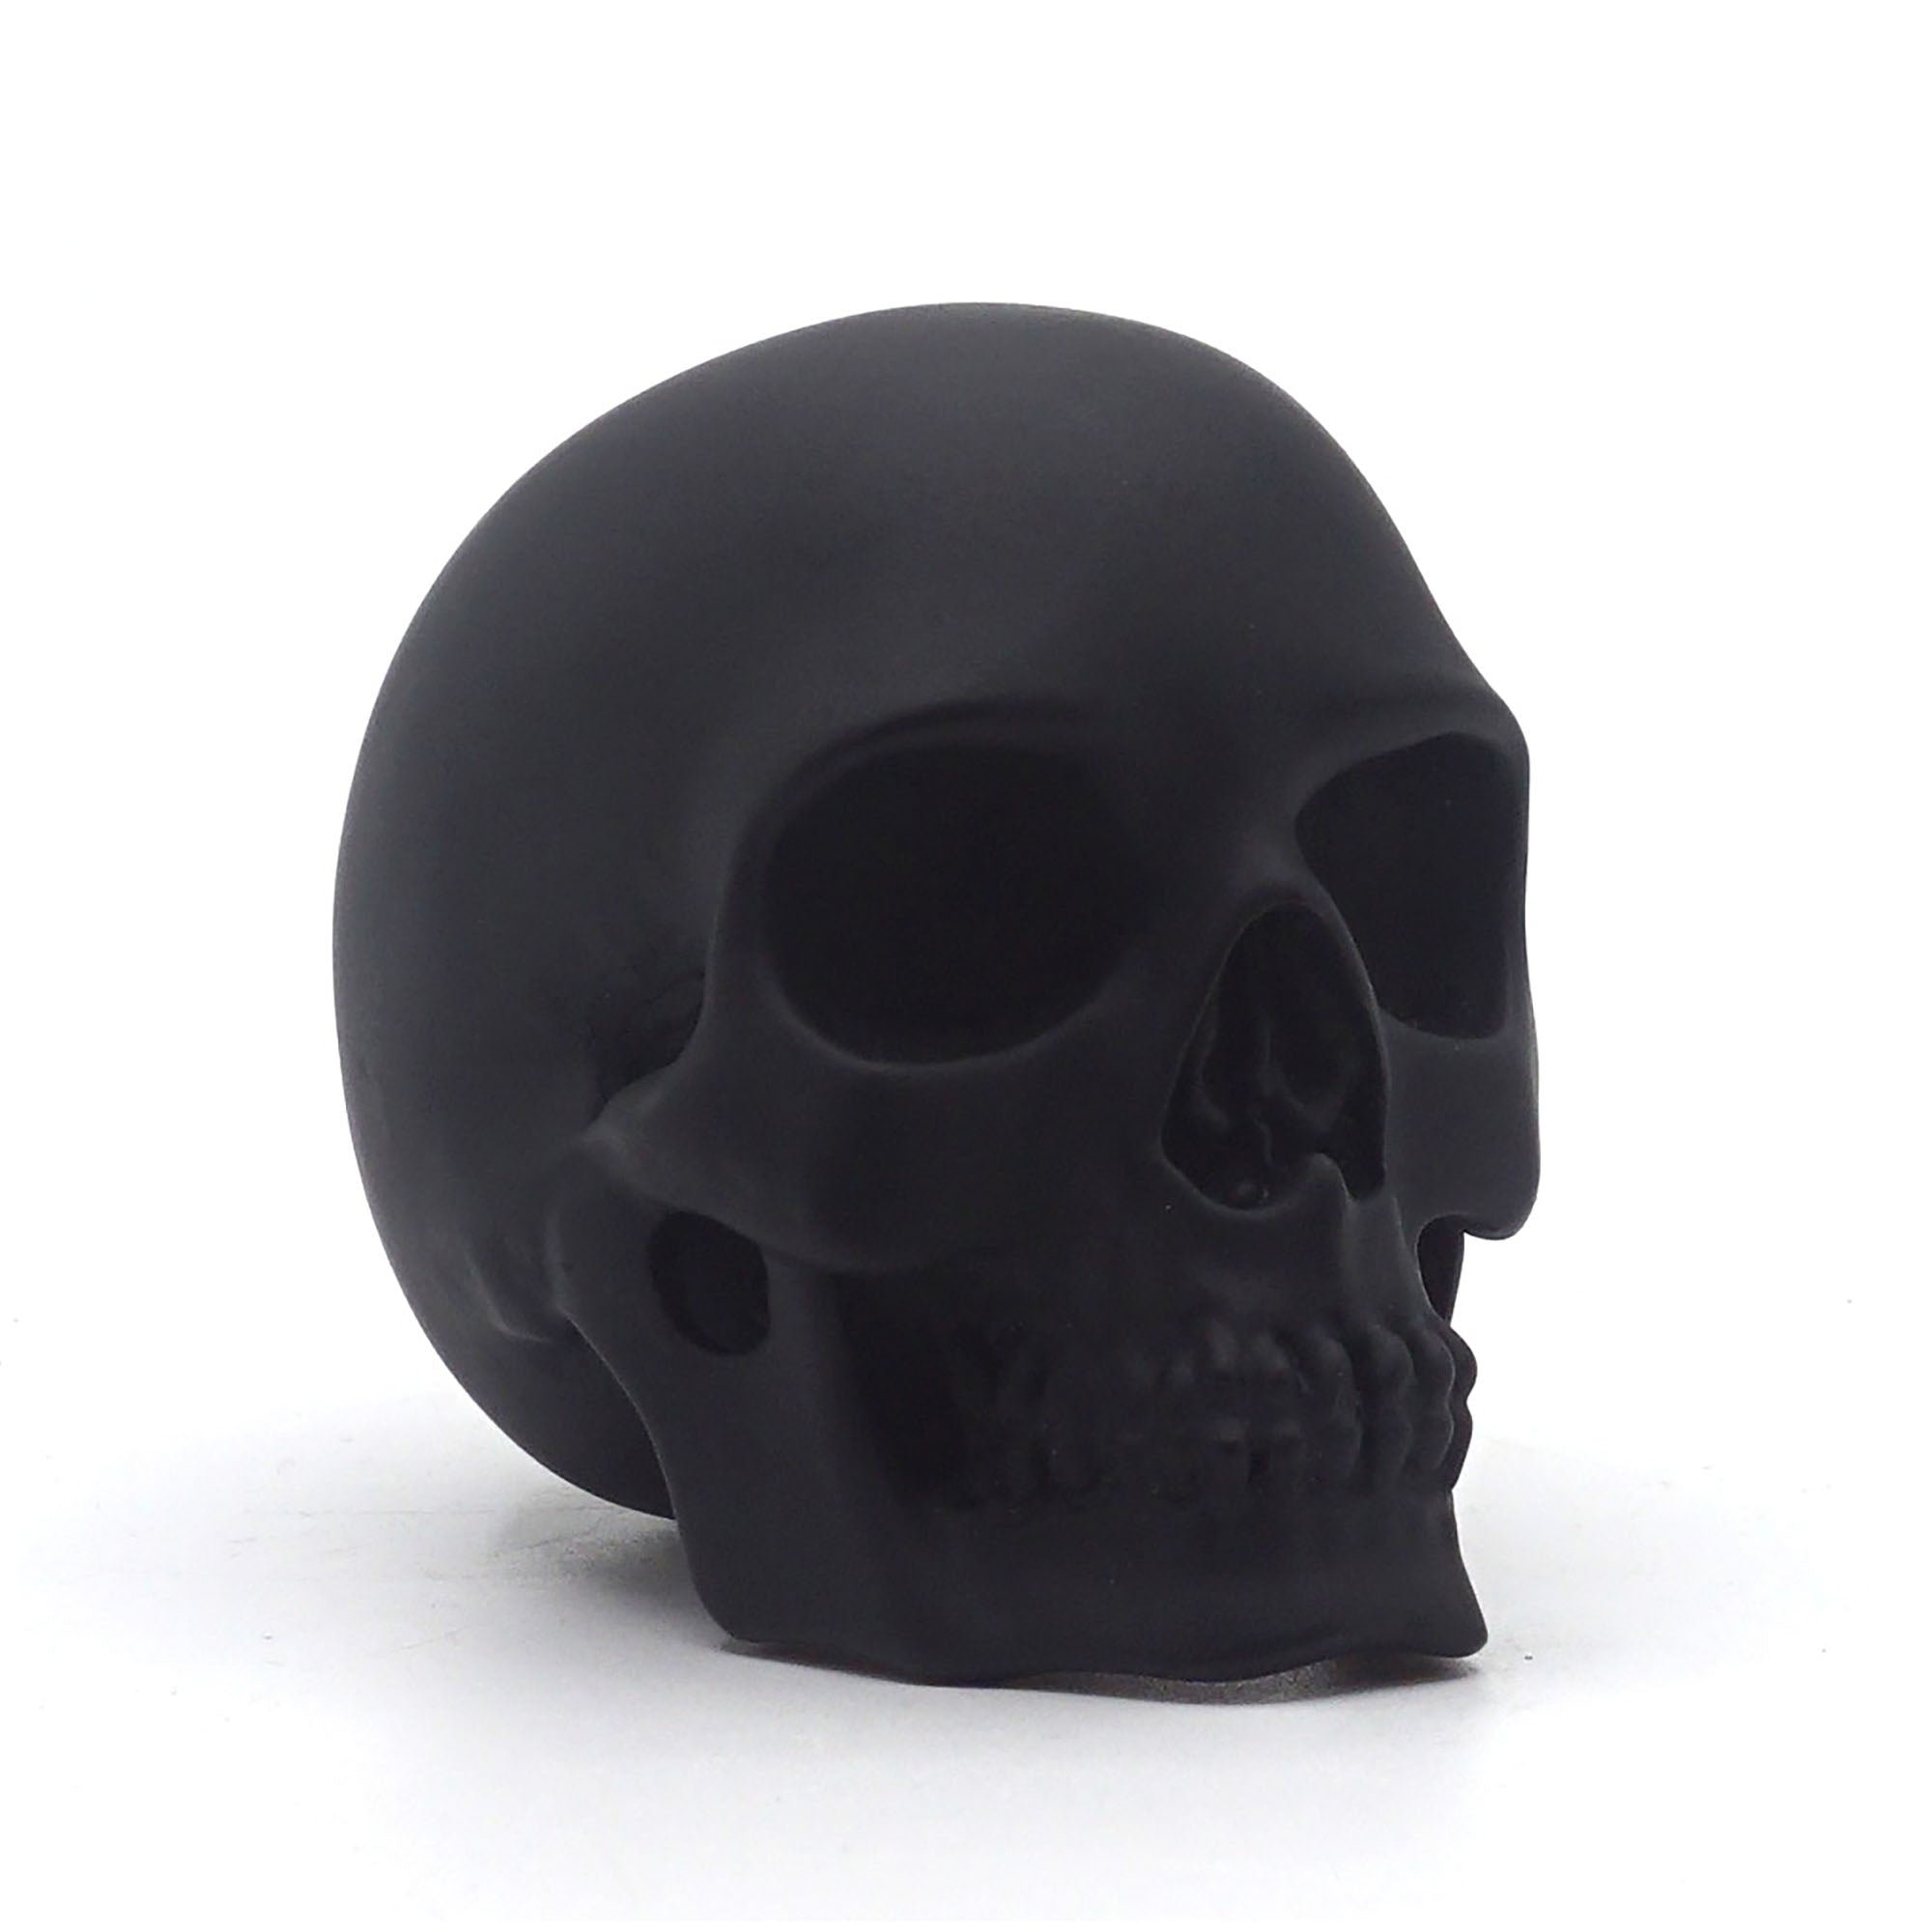 Calavera Small Skull Decorative Figure Glossy Black